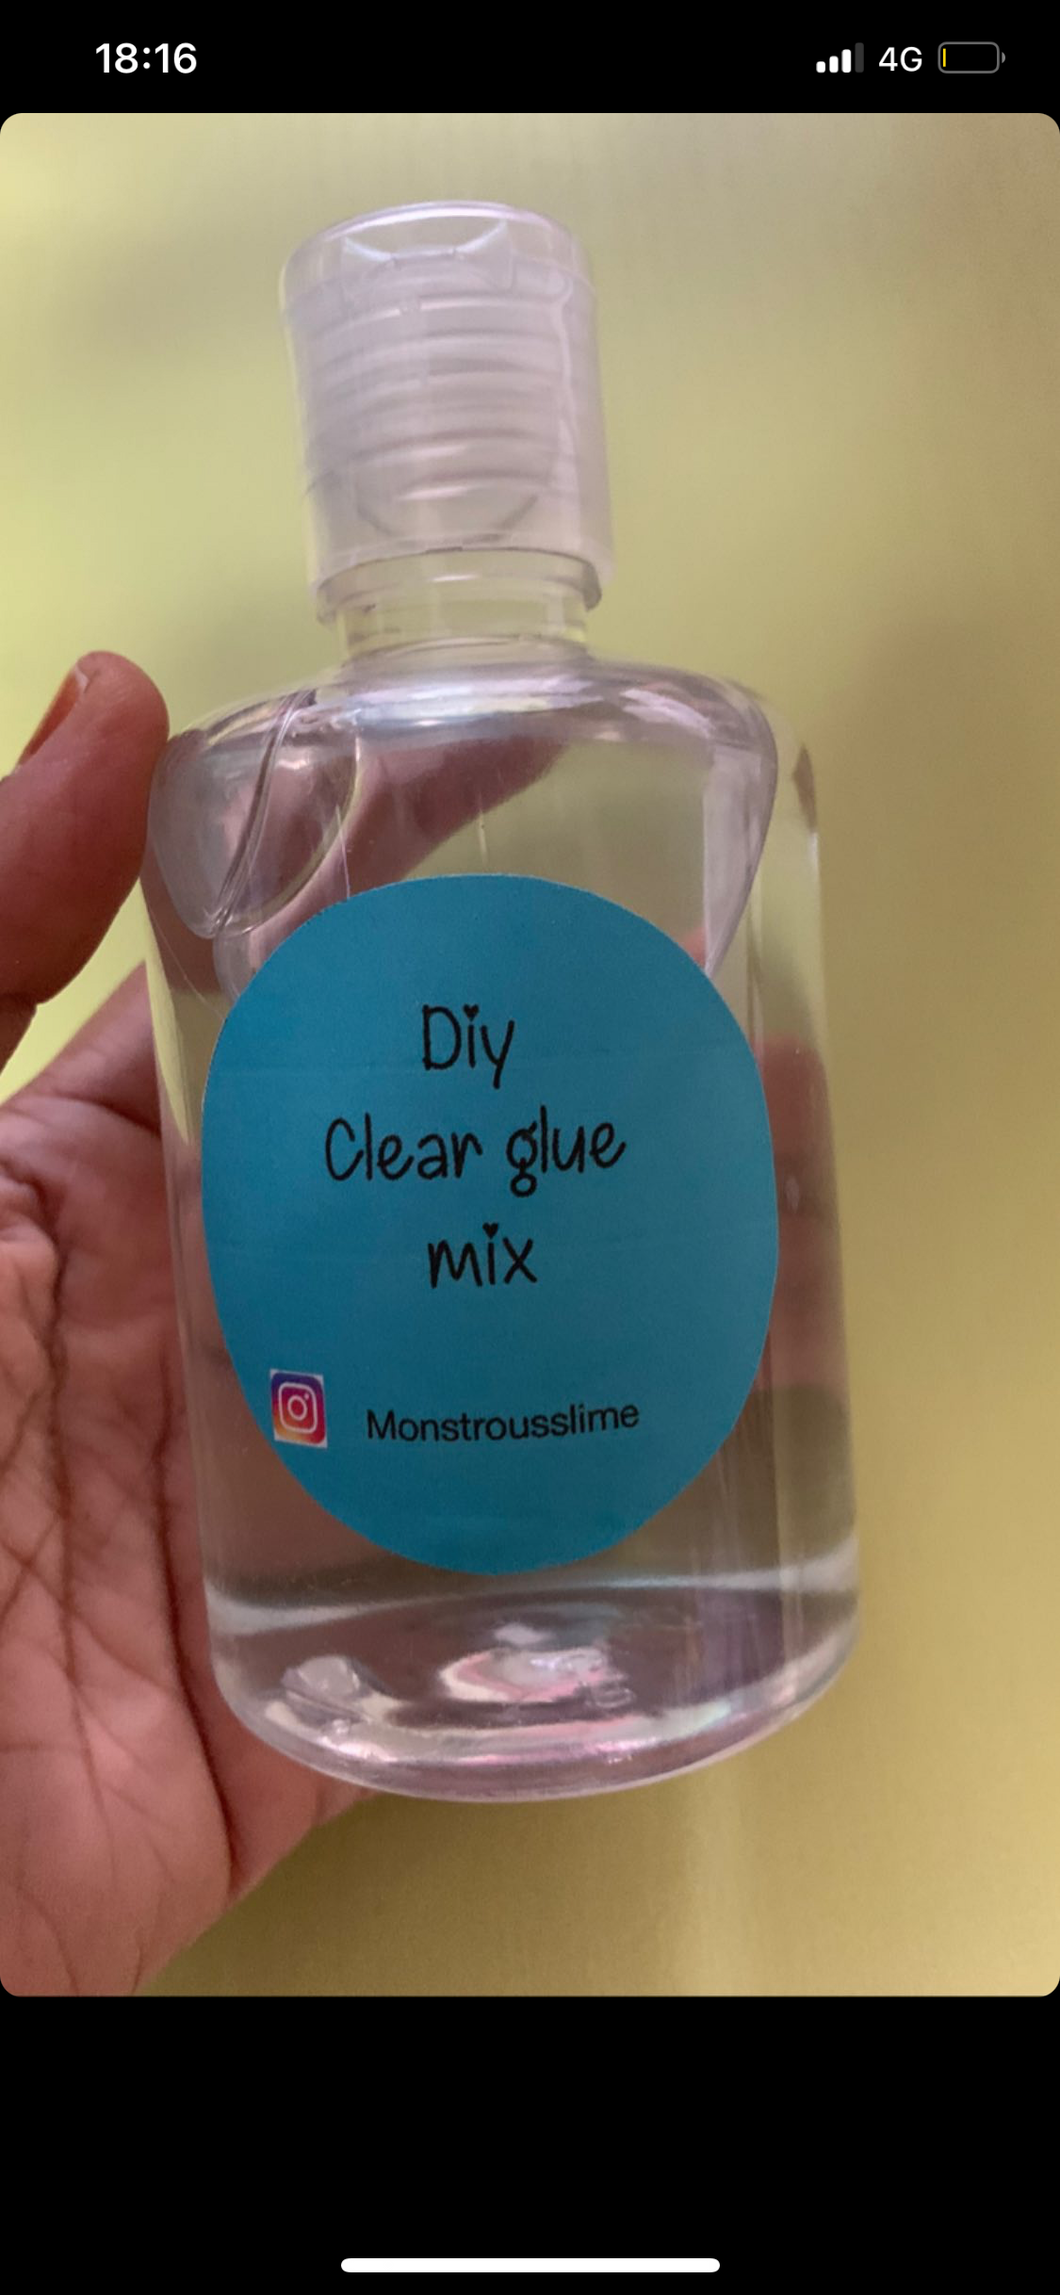 Diy clear glue mix- Supplies